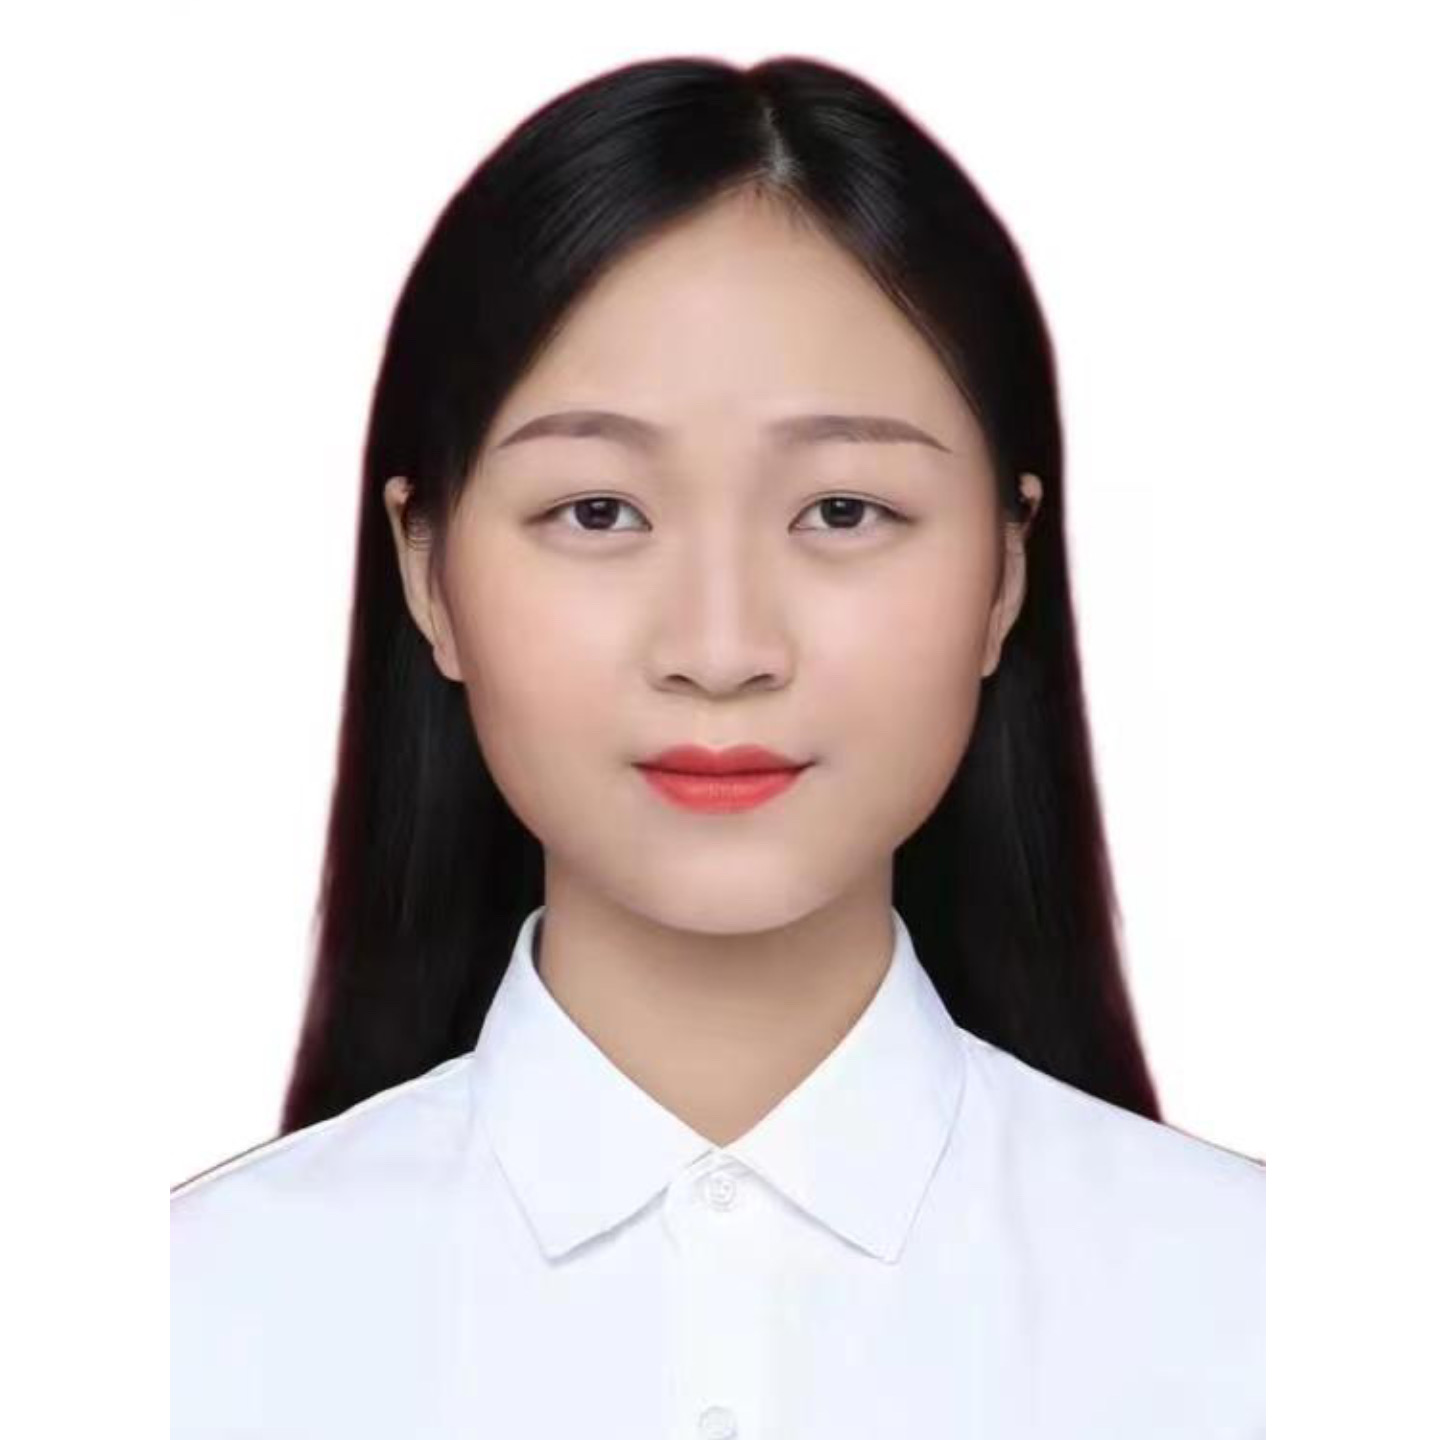 Ms. Wuxia YE